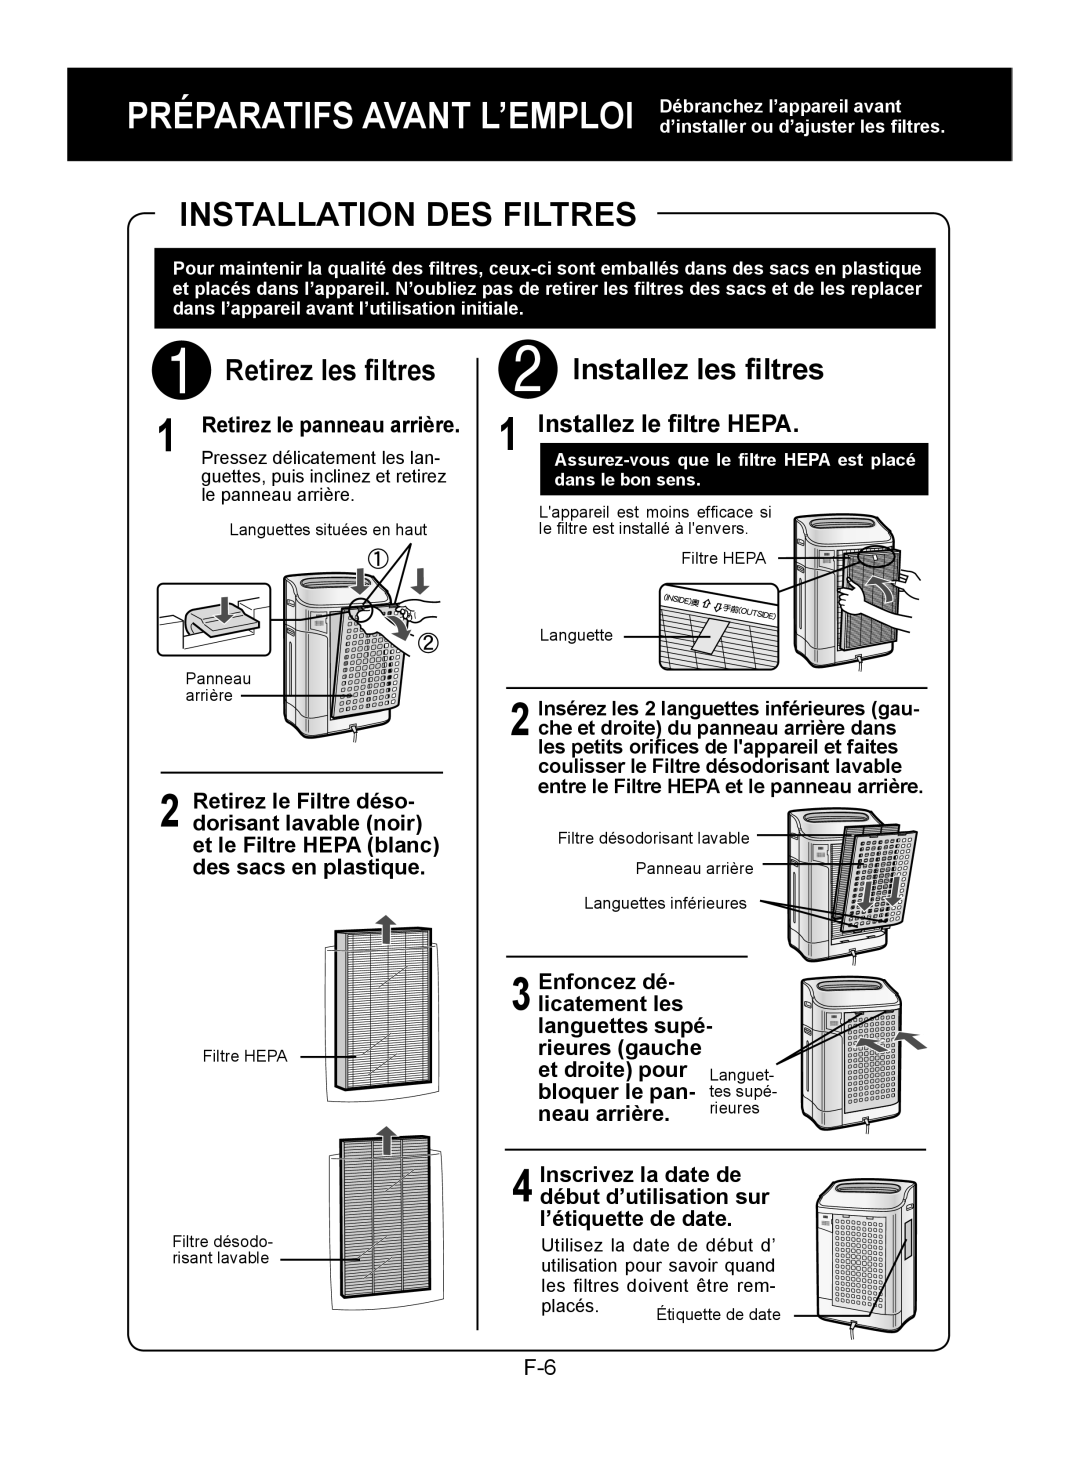 Sharp KC-860E Installation Des Filtres, Retirez les filtres, Installez les filtres, Installez le filtre HEPA, Enfoncez dé 